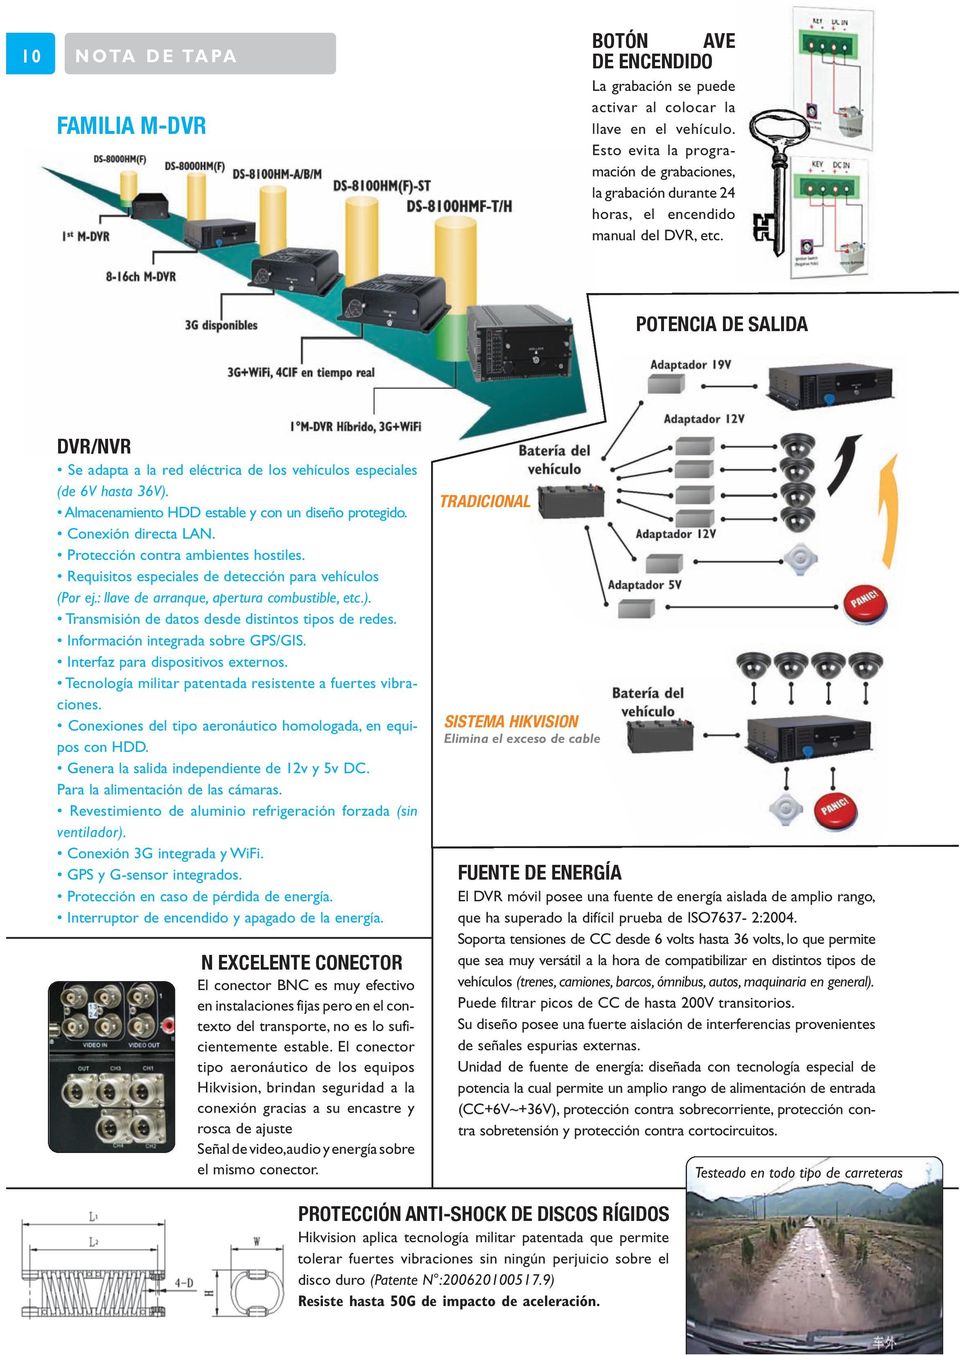 potencia de Salida dvr/nvr móvil Se adapta a la red eléctrica de los vehículos especiales (de 6V hasta 36V). Almacenamiento HDD estable y con un diseño protegido. Conexión directa LAN.